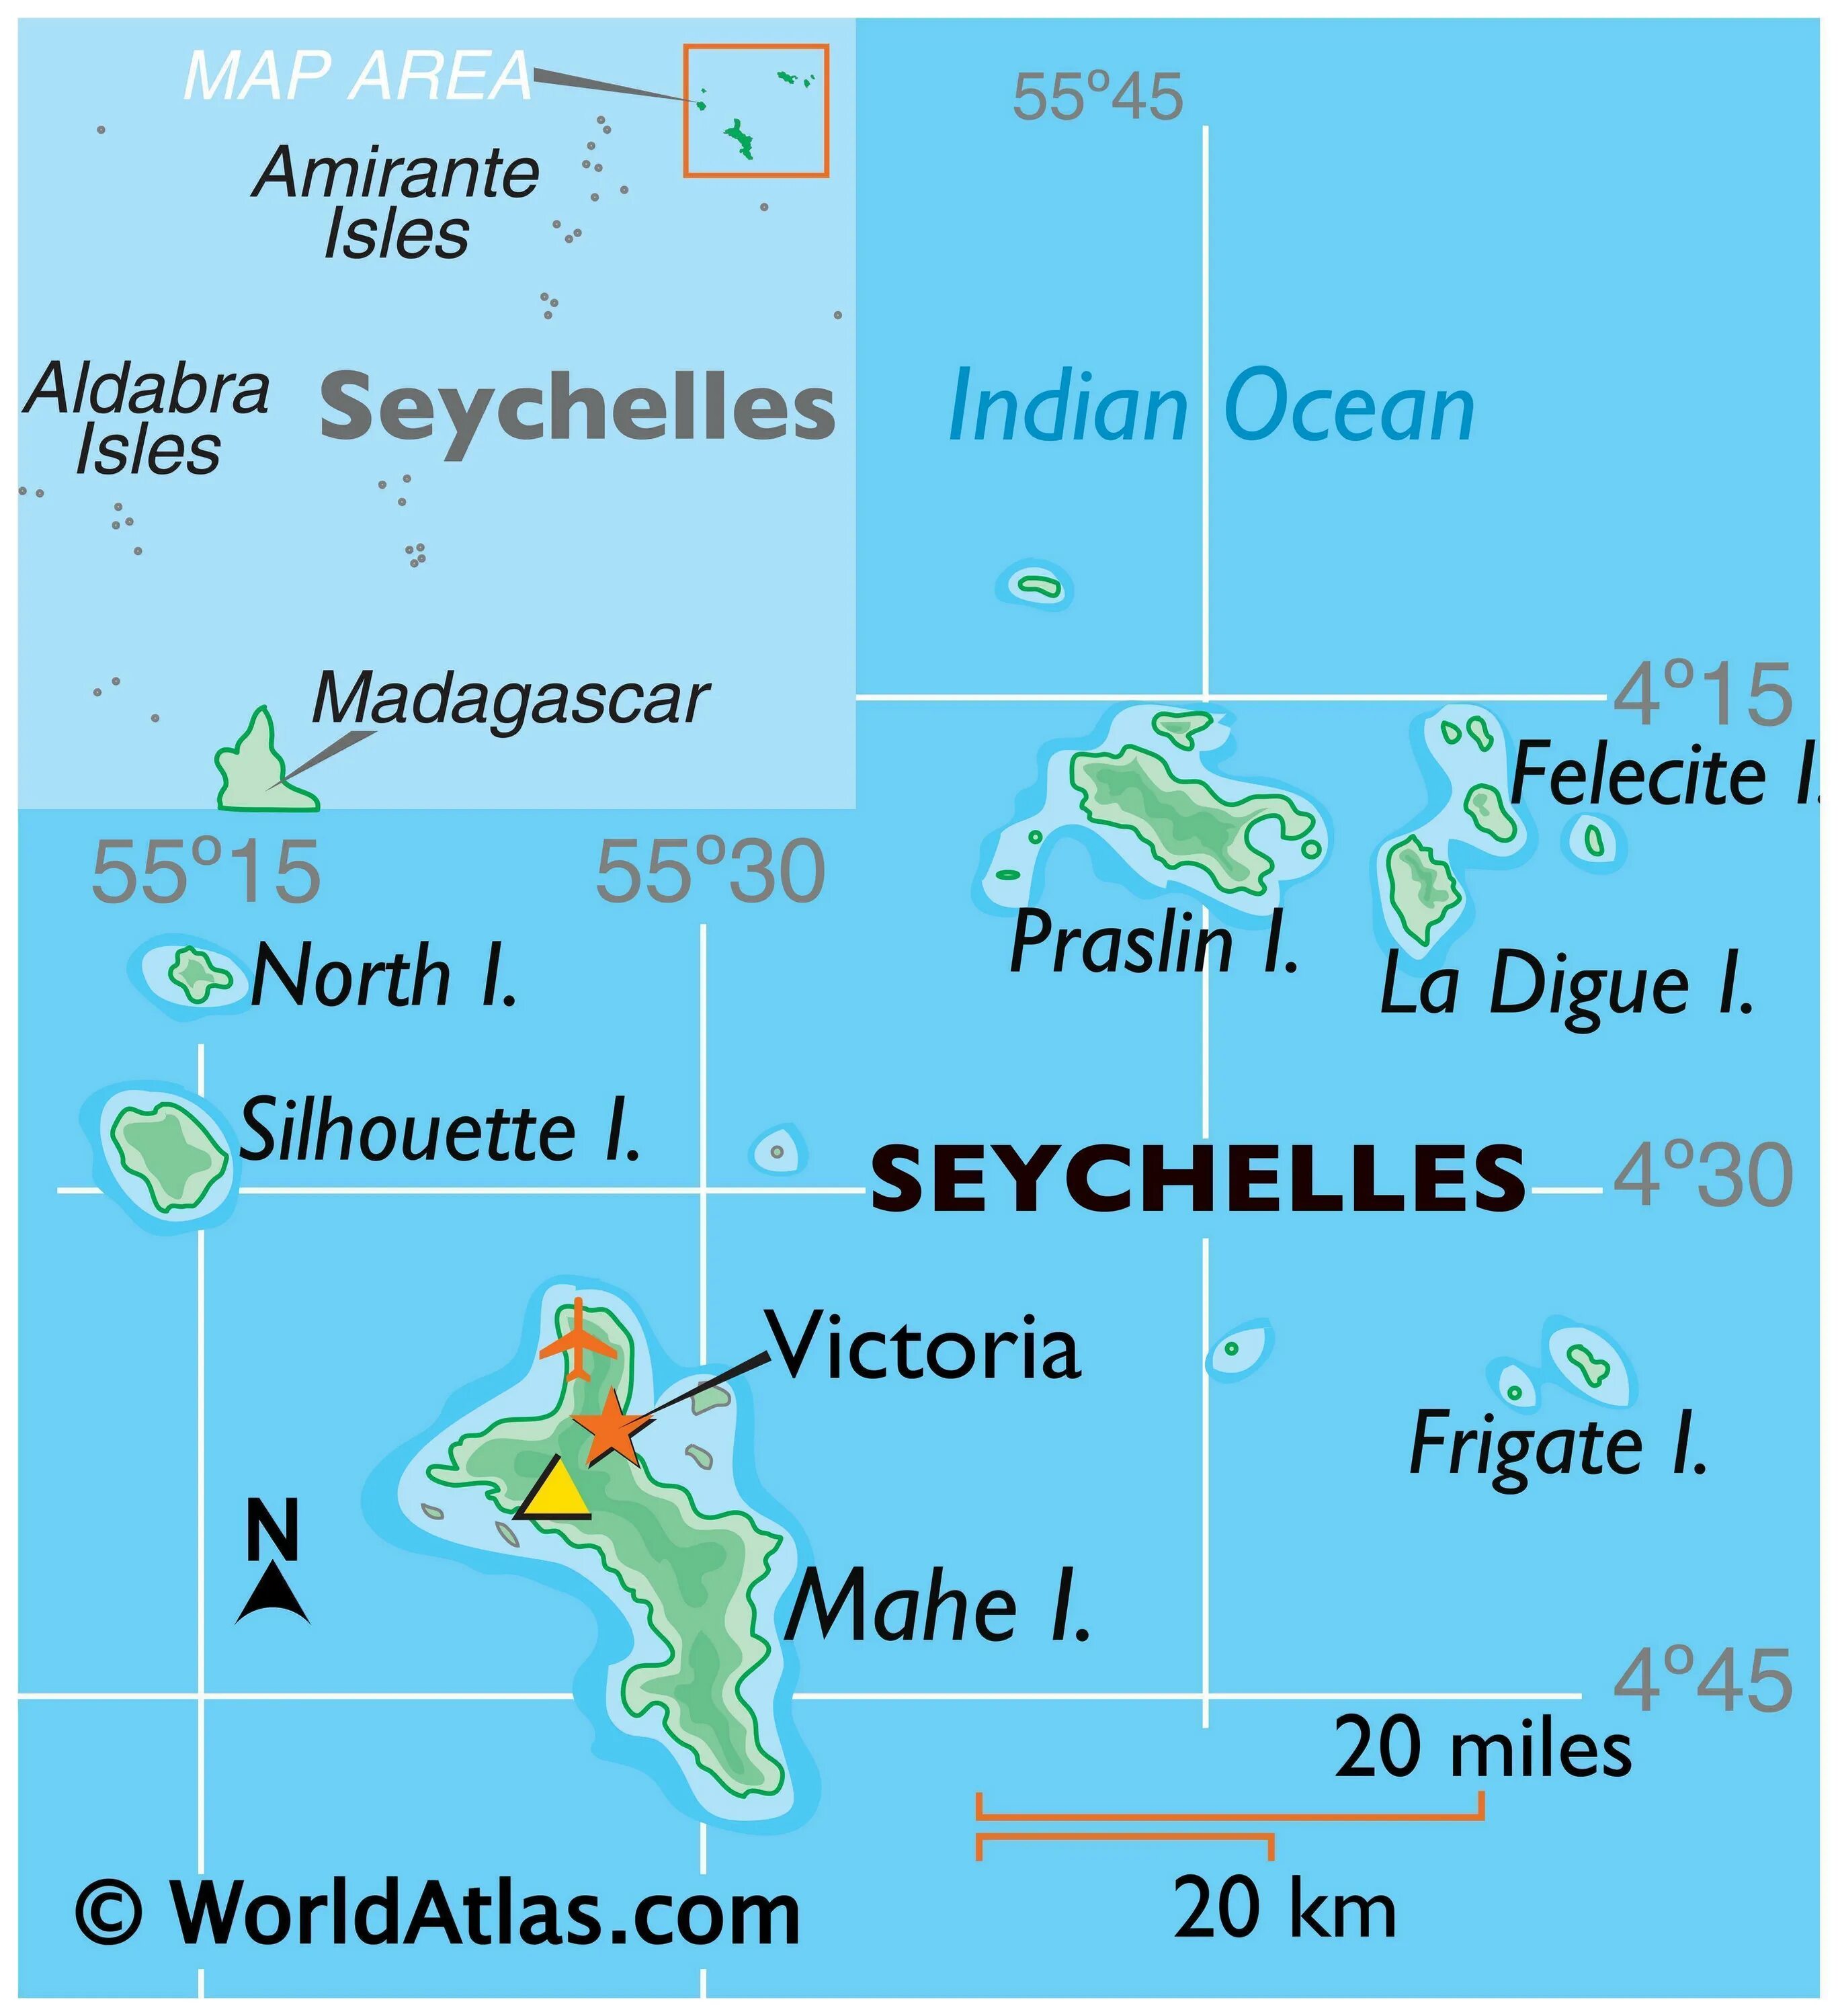 Остров Альдабра Сейшельские острова. Сейшельские острова остров Маэ на карте.